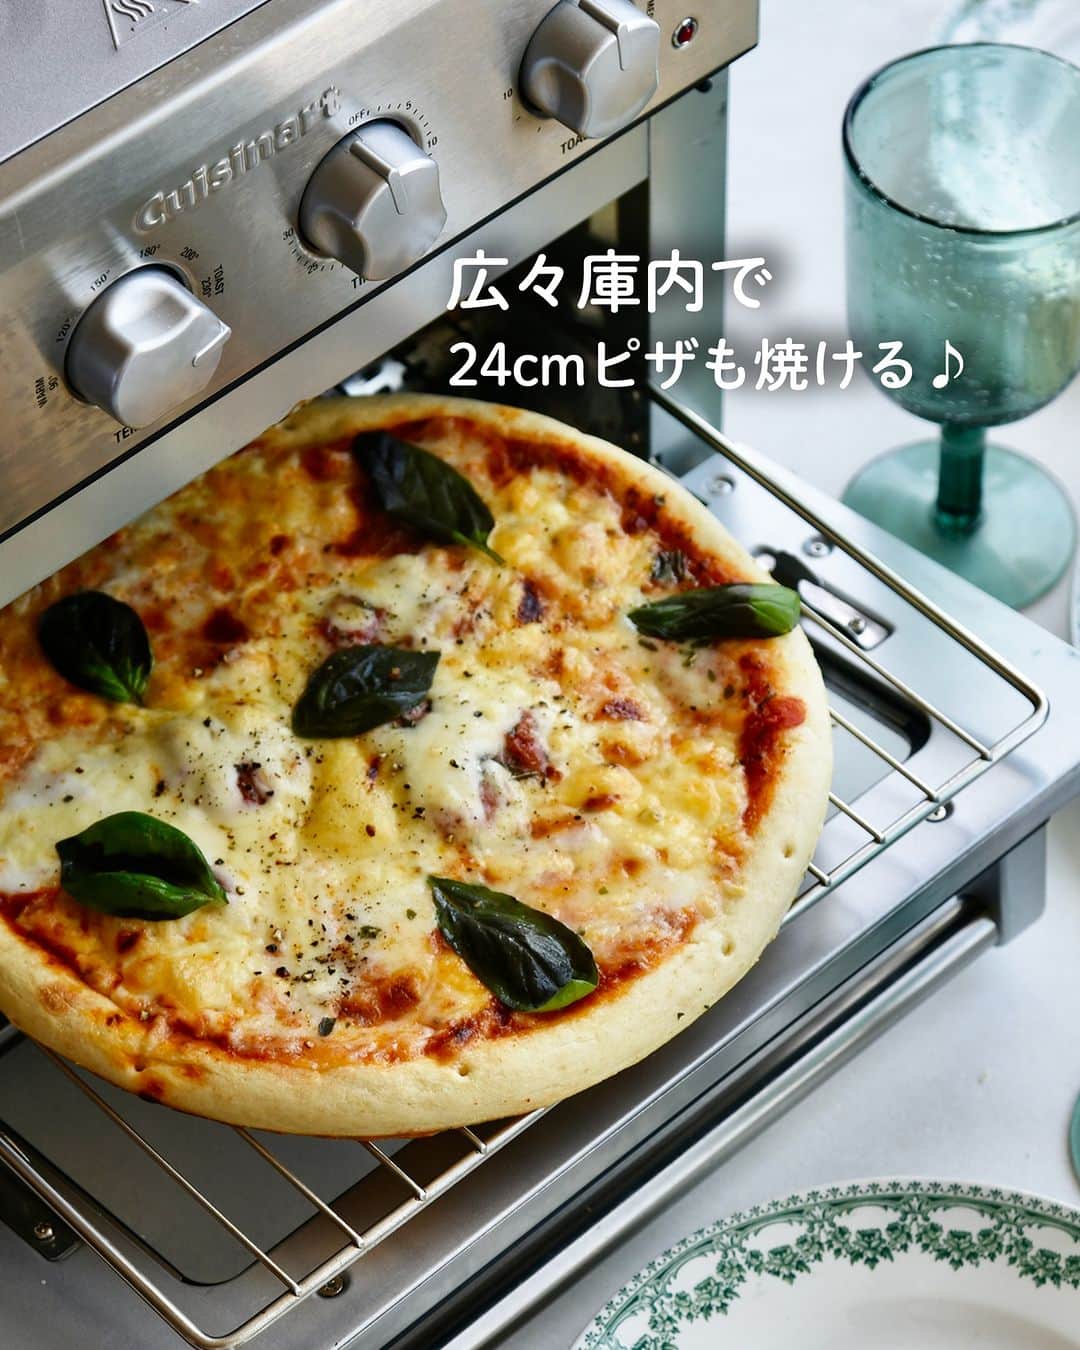 Cuisinart(クイジナート)ジャパン公式アカウントのインスタグラム：「24cmピザも焼けちゃうトースター🍕  ピザを買ってきて温めようと思ったら、 トースターに入らなかった…。 そんな経験はありませんか？？  クイジナートの「エアフライ オーブントースター」は、 24cmサイズのピザも入る広々設計♪  チルドピザなら、TOAST＋FAN/230℃/5分加熱。  天面から送り出される強力熱風で食材を包み込み、 カリッとモチッと食感の本格的なピザがおうちでも楽しめます✨  ・。・。・。・。・。・⁣ 📷Photo： @reiko.t.table  🍕Item：エアフライ オーブントースター  🔍TOA38SJ（シルバー） TOA-38WJ（ホワイト）⁣ ・。・。・。・。・。・⁣  ーーーーー クイジナート公式HPでは、毎日の料理が楽しくなる様々な製品情報やレシピを公開中♪ 詳しくはプロフィールのリンクから！ ▶️@cuisine_art ーーーーー  #Cuisinart #クイジナート #クイジナートのある生活 #クイジナートLOVE #時短調理 #時短家電 #キッチン家電 #おうちごはん #おうち時間を楽しむ #丁寧な暮らし #豊かな食卓 #美味しい時間 #料理好きな人と繋がりたい #クイジナートエアフライオーブントースター #クイジナートノンフライオーブントースター #オーブントースター #トースターレシピ #ピザ #おうちピザ #ピザレシピ  #時短レシピ #ノンフライヤー #冷凍ピザ #焼き立てピザ #今日のごはん #おうちごはん #手作りピザ #本格ピザ #冷凍ピザトースト #マルゲリータ」